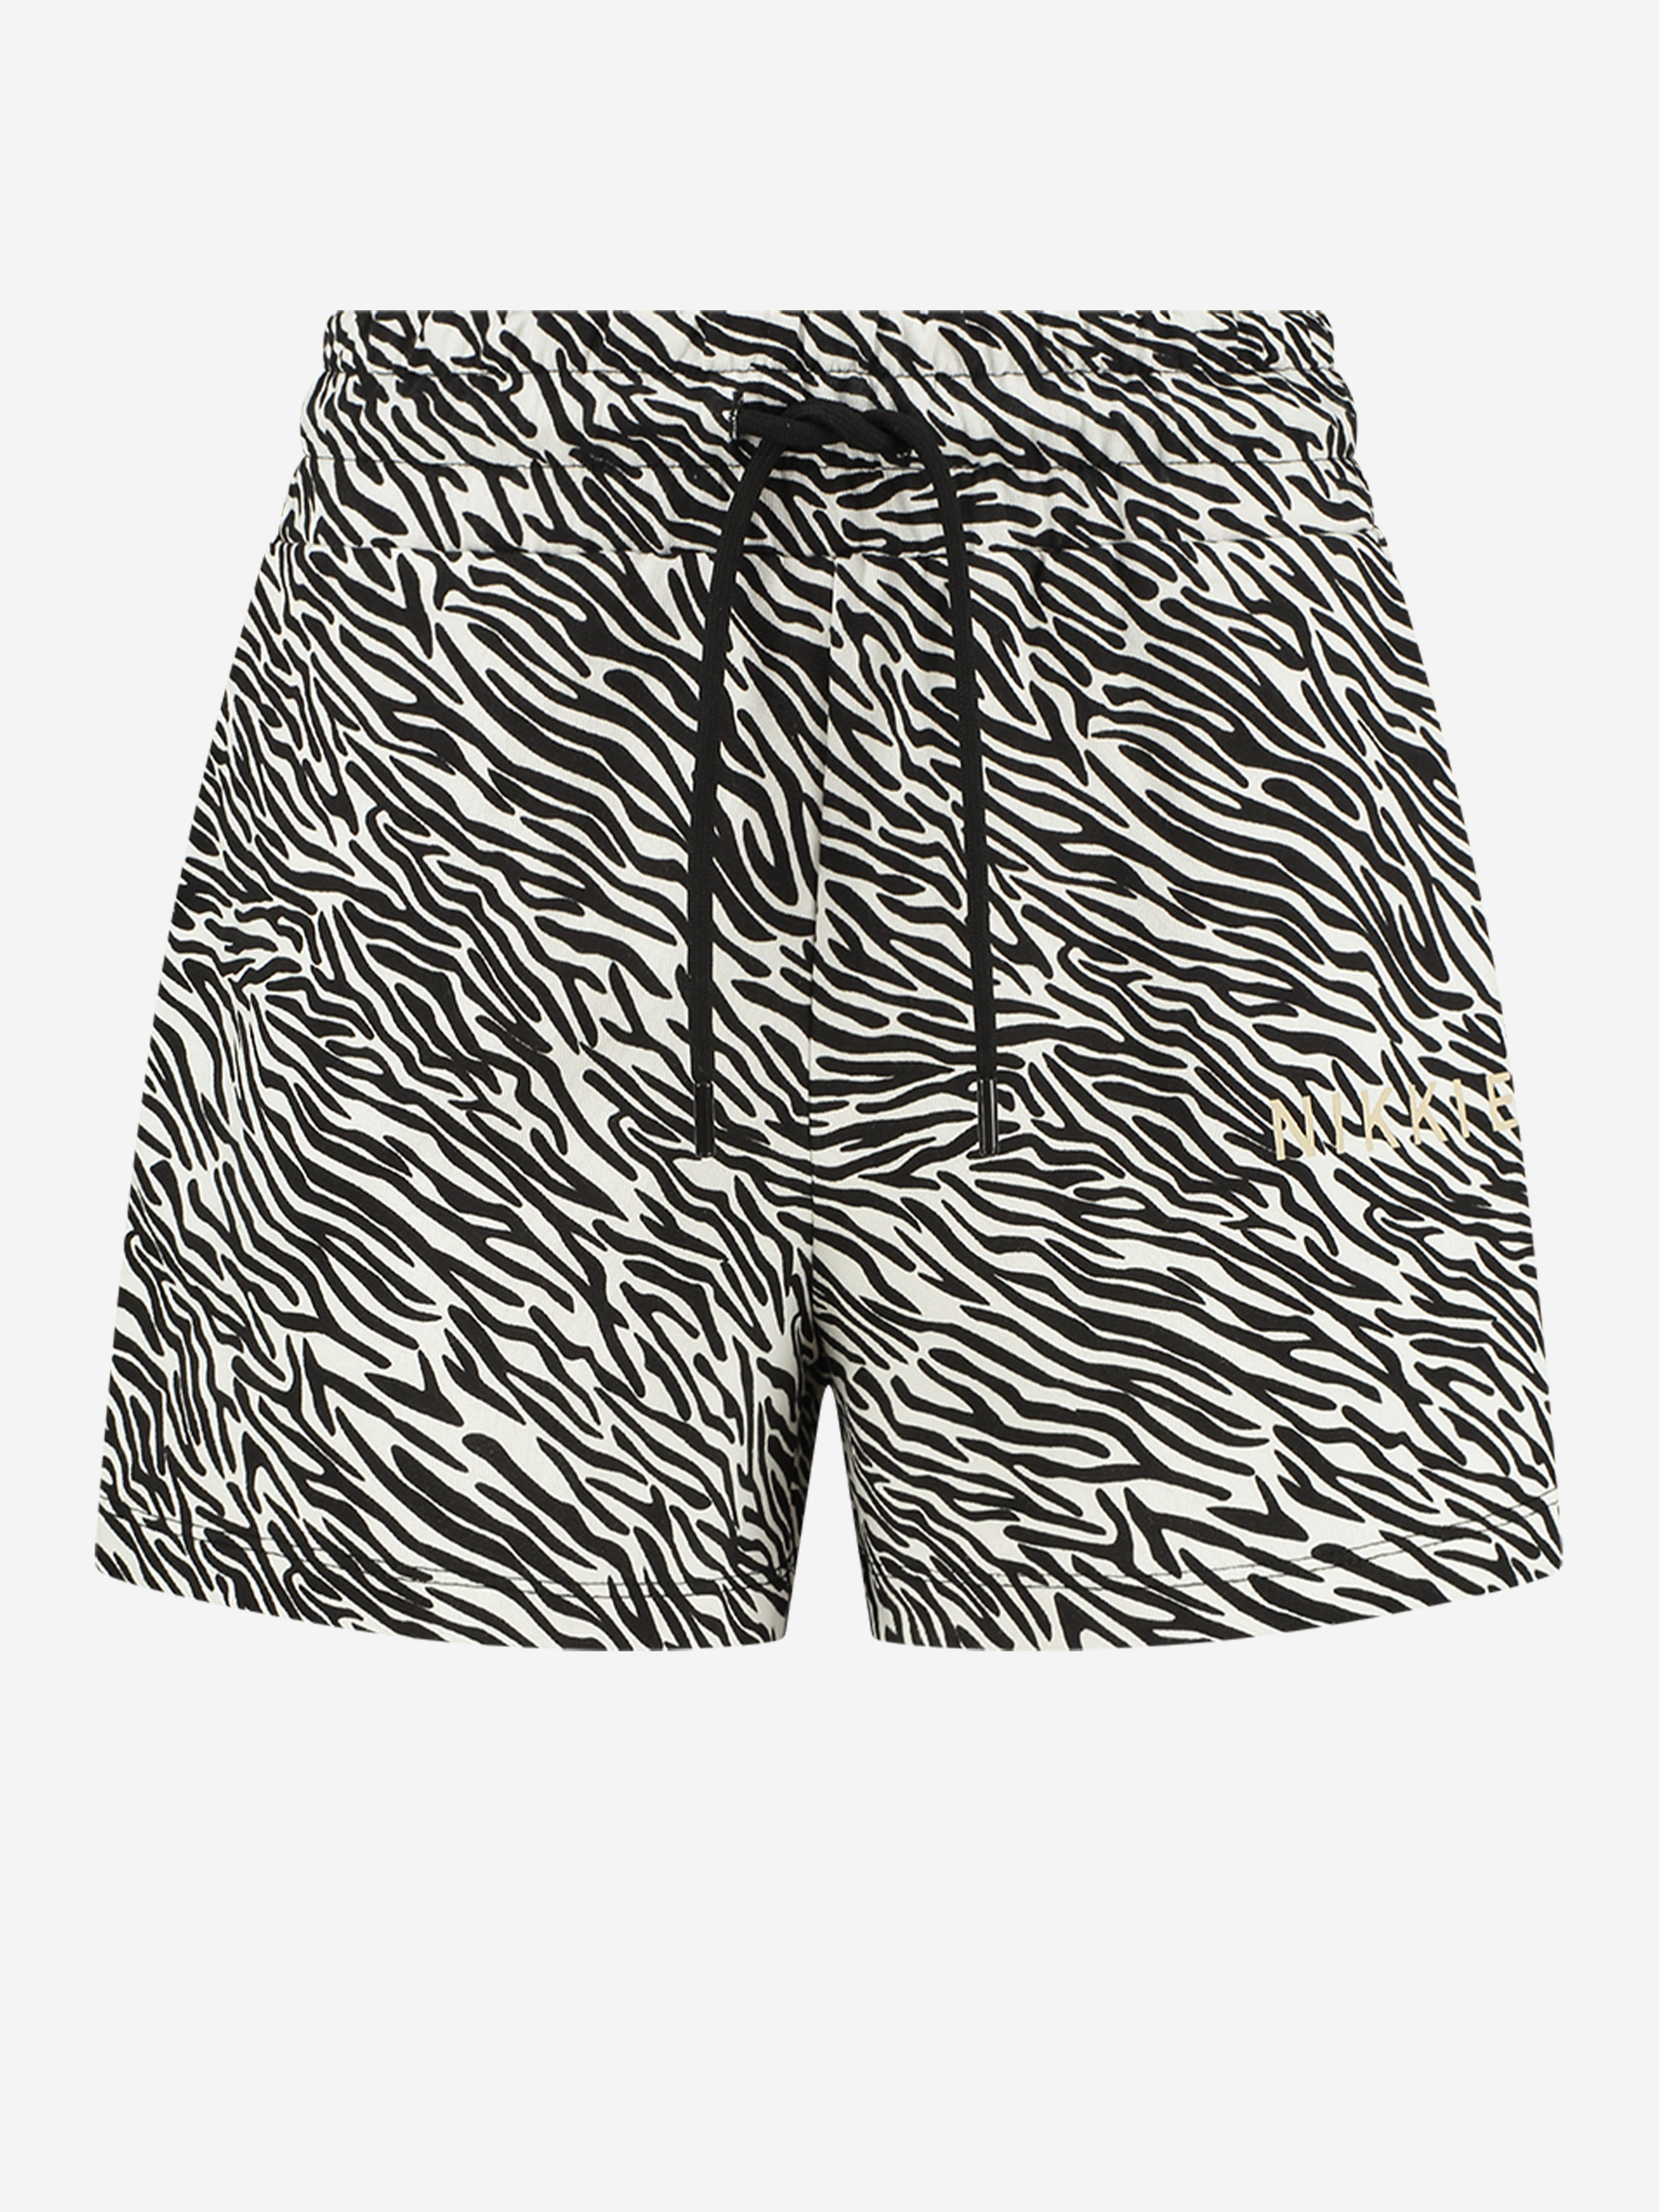 Zebra High Waist Shorts